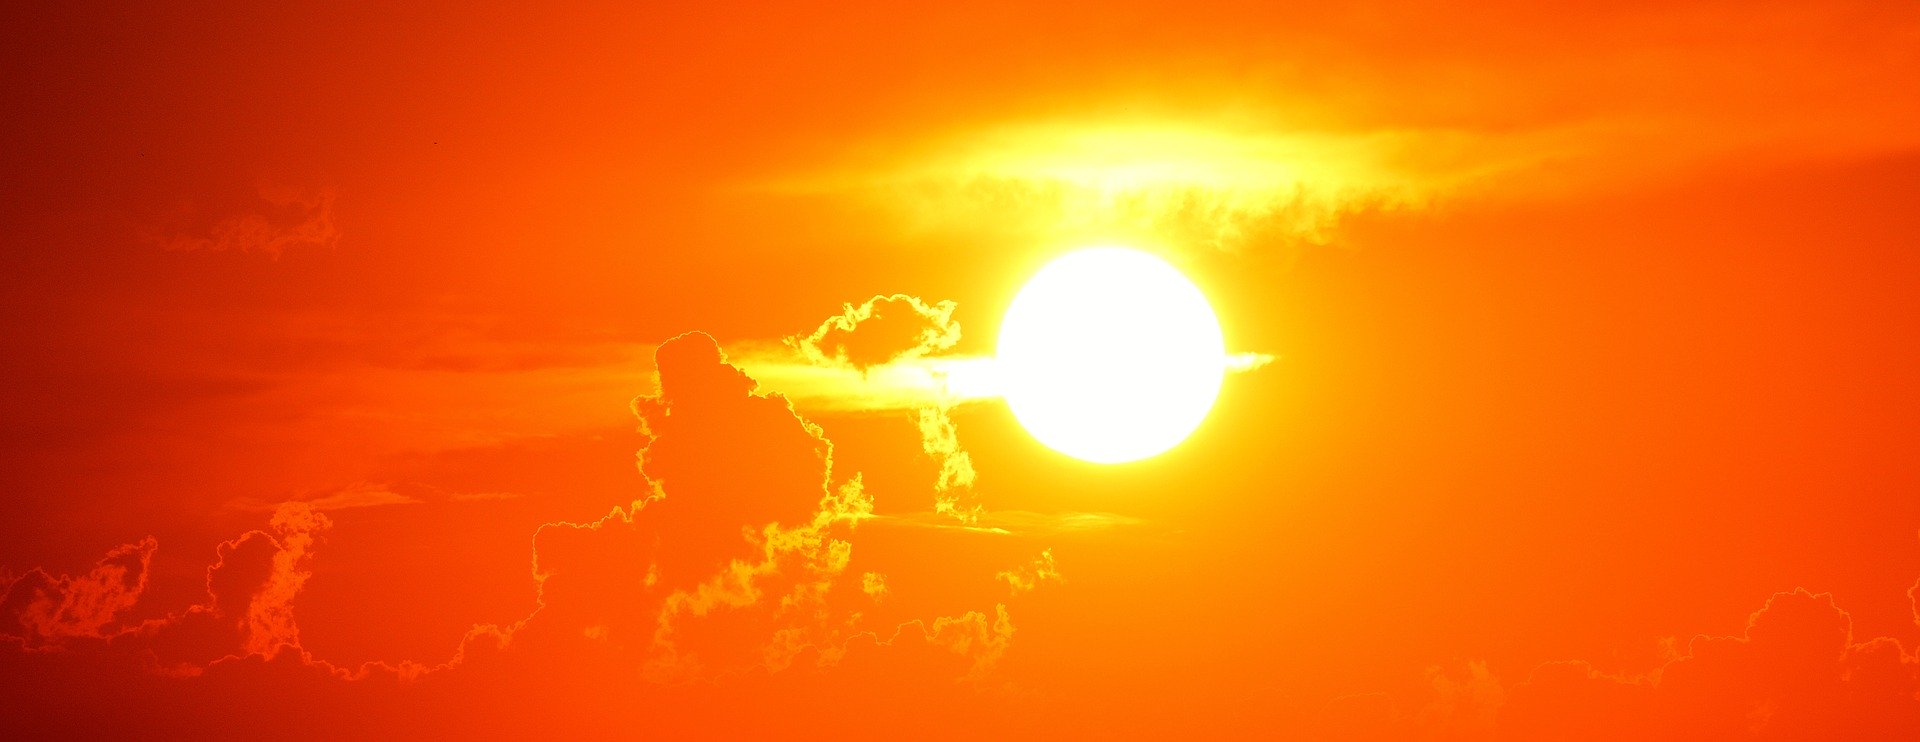 Синоптики предупредили о жаре в Ленобласти